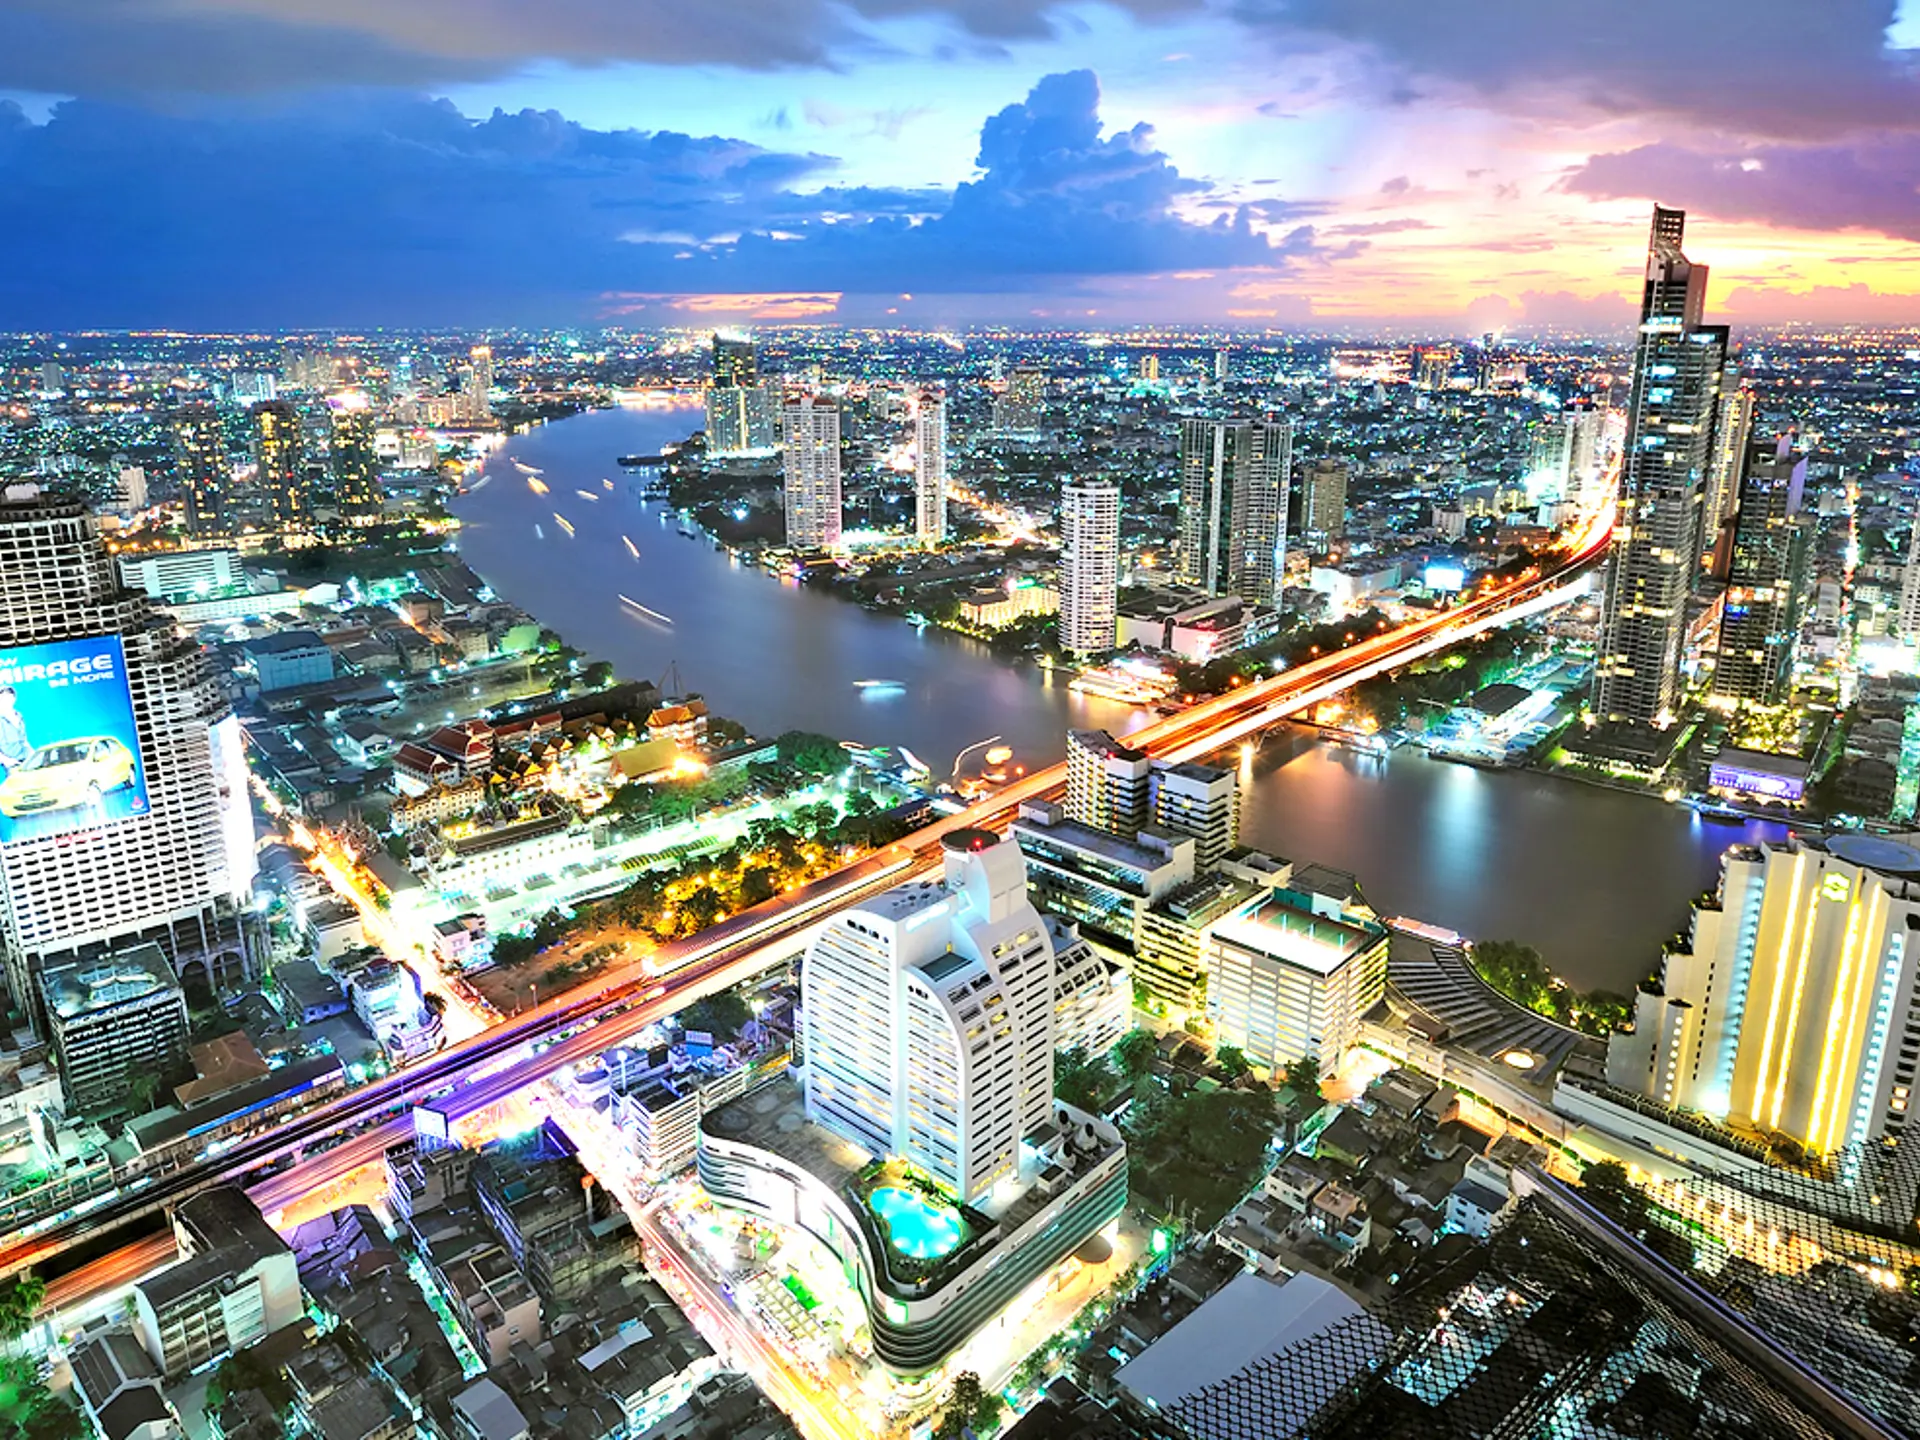 HOTEL I CENTRUM - I Bangkok indlogeres i Centre Point Silom, der ses i forgrunden (med pool). Her er der butikker, restauranter, gadekøkkener og let adgang til flodbåde og Sky Train